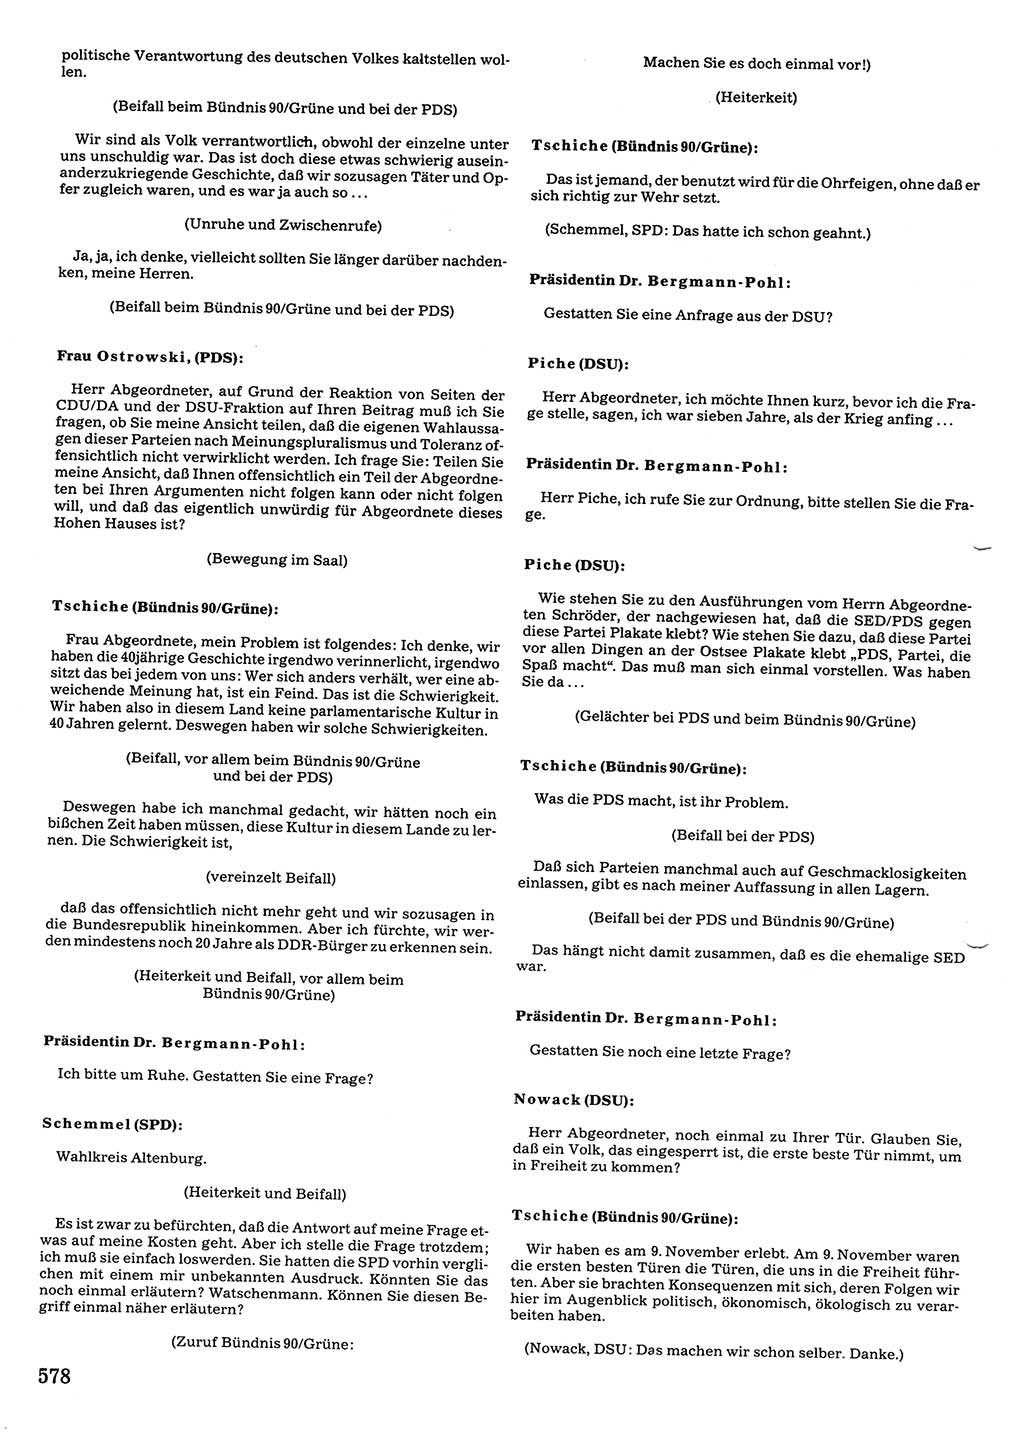 Tagungen der Volkskammer (VK) der Deutschen Demokratischen Republik (DDR), 10. Wahlperiode 1990, Seite 578 (VK. DDR 10. WP. 1990, Prot. Tg. 1-38, 5.4.-2.10.1990, S. 578)